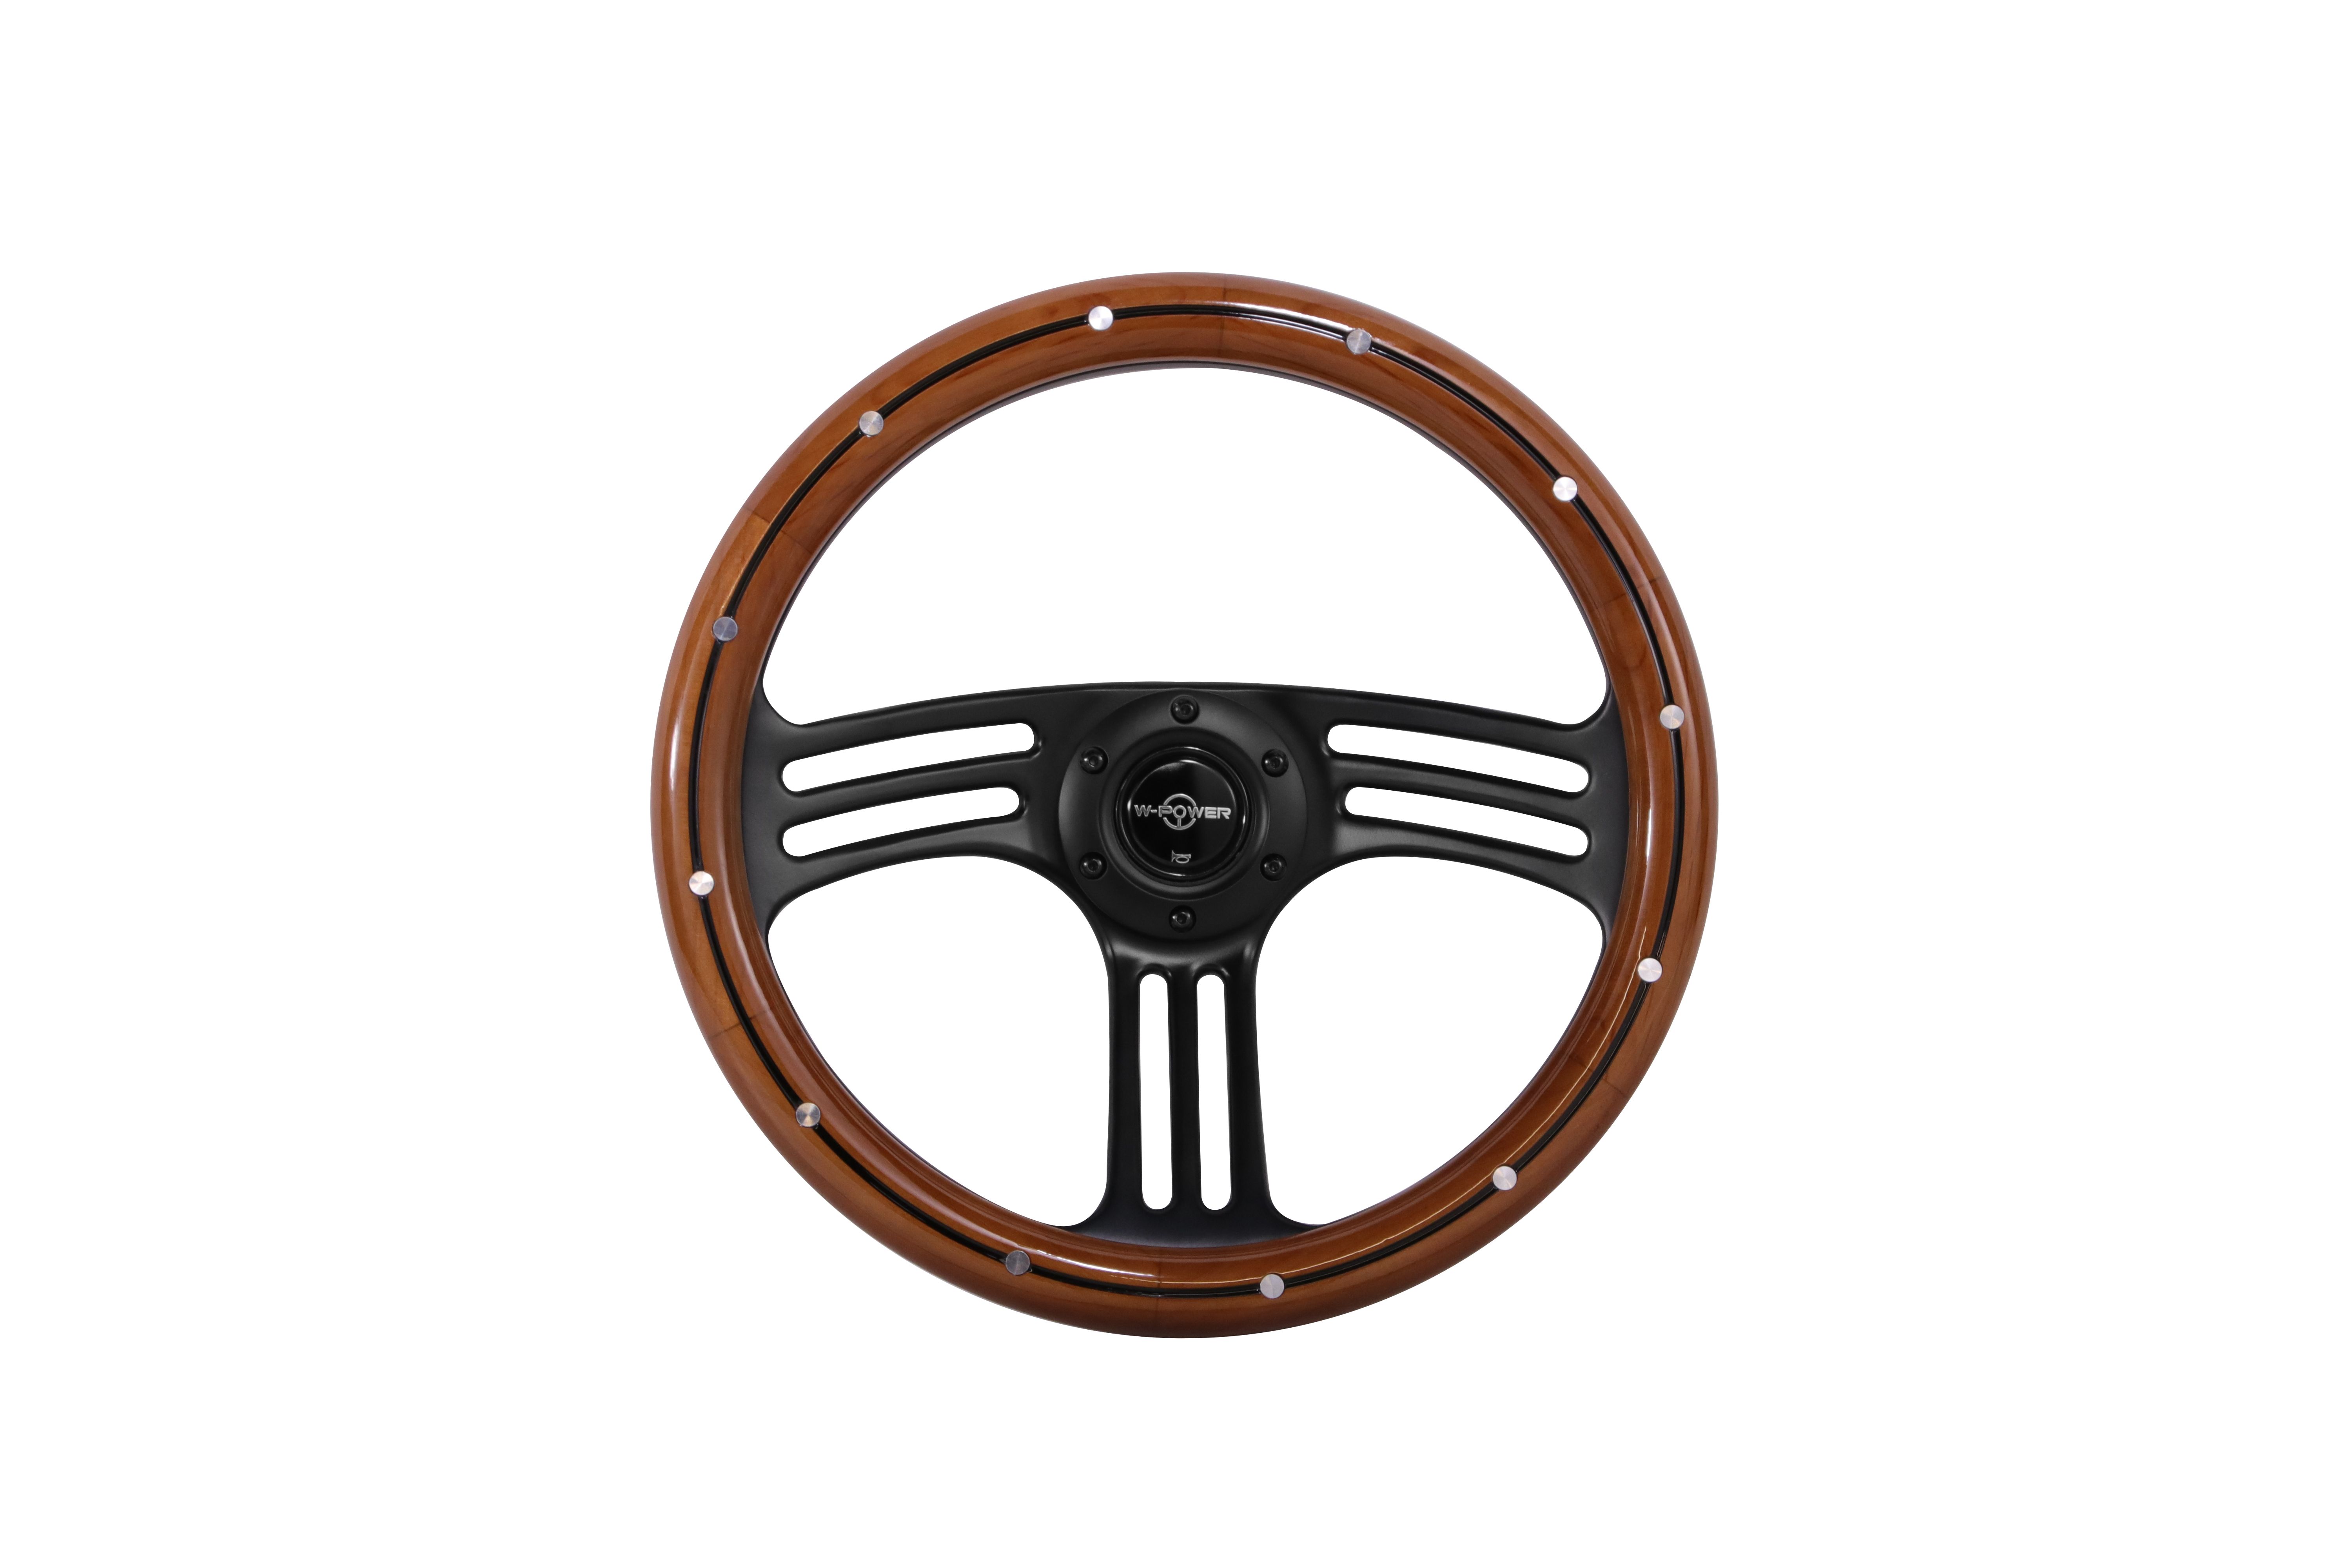 AK-8980 real wood steering wheel